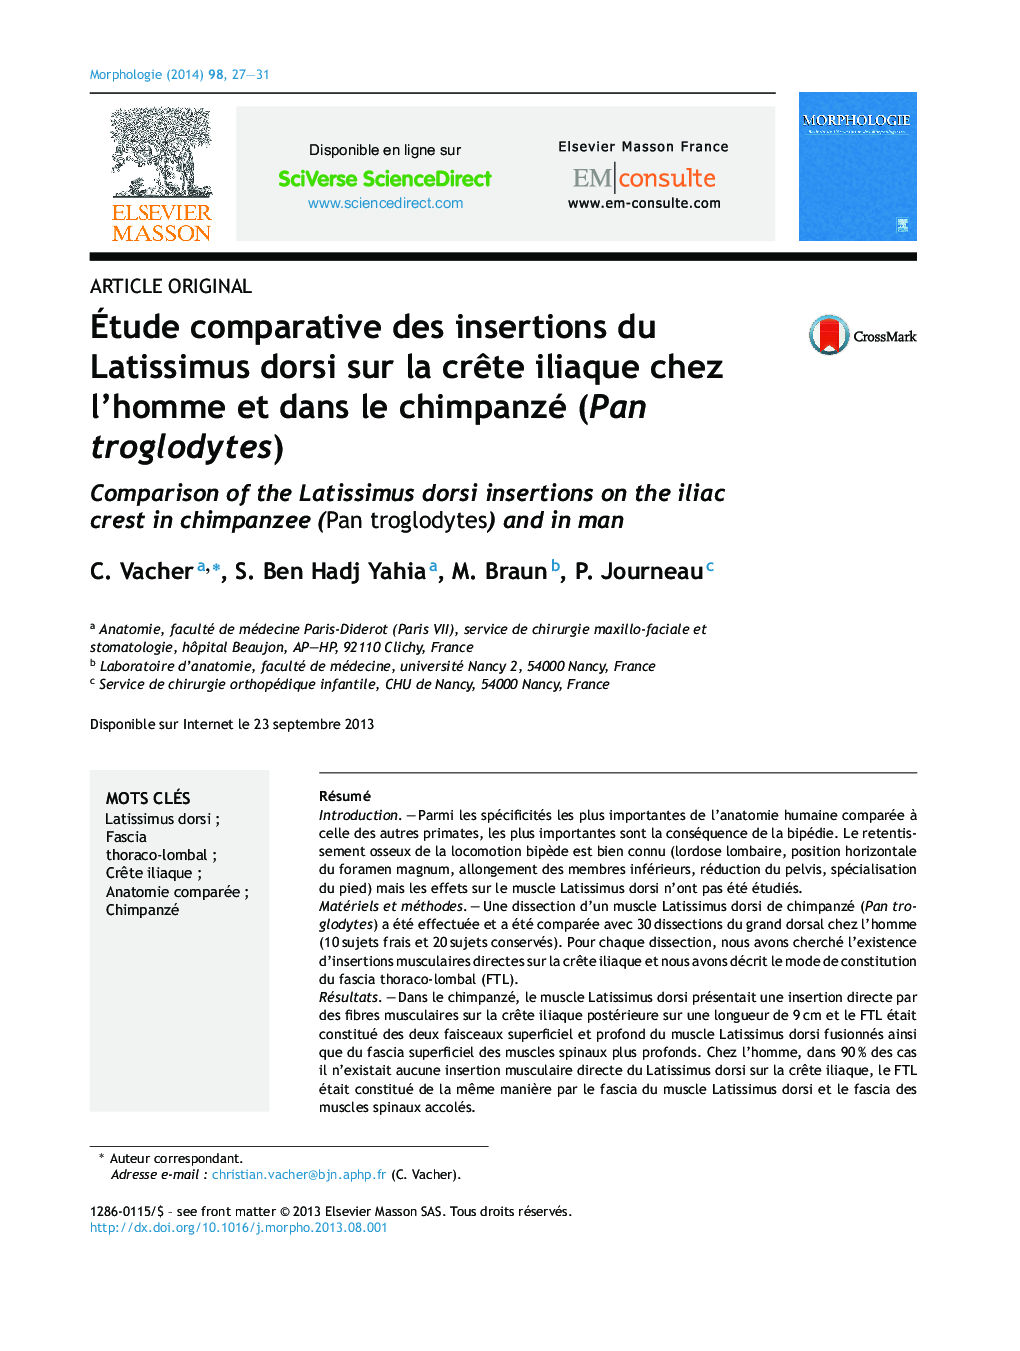 Ãtude comparative des insertions du Latissimus dorsi sur la crÃªte iliaque chez l'homme et dans le chimpanzé (Pan troglodytes)